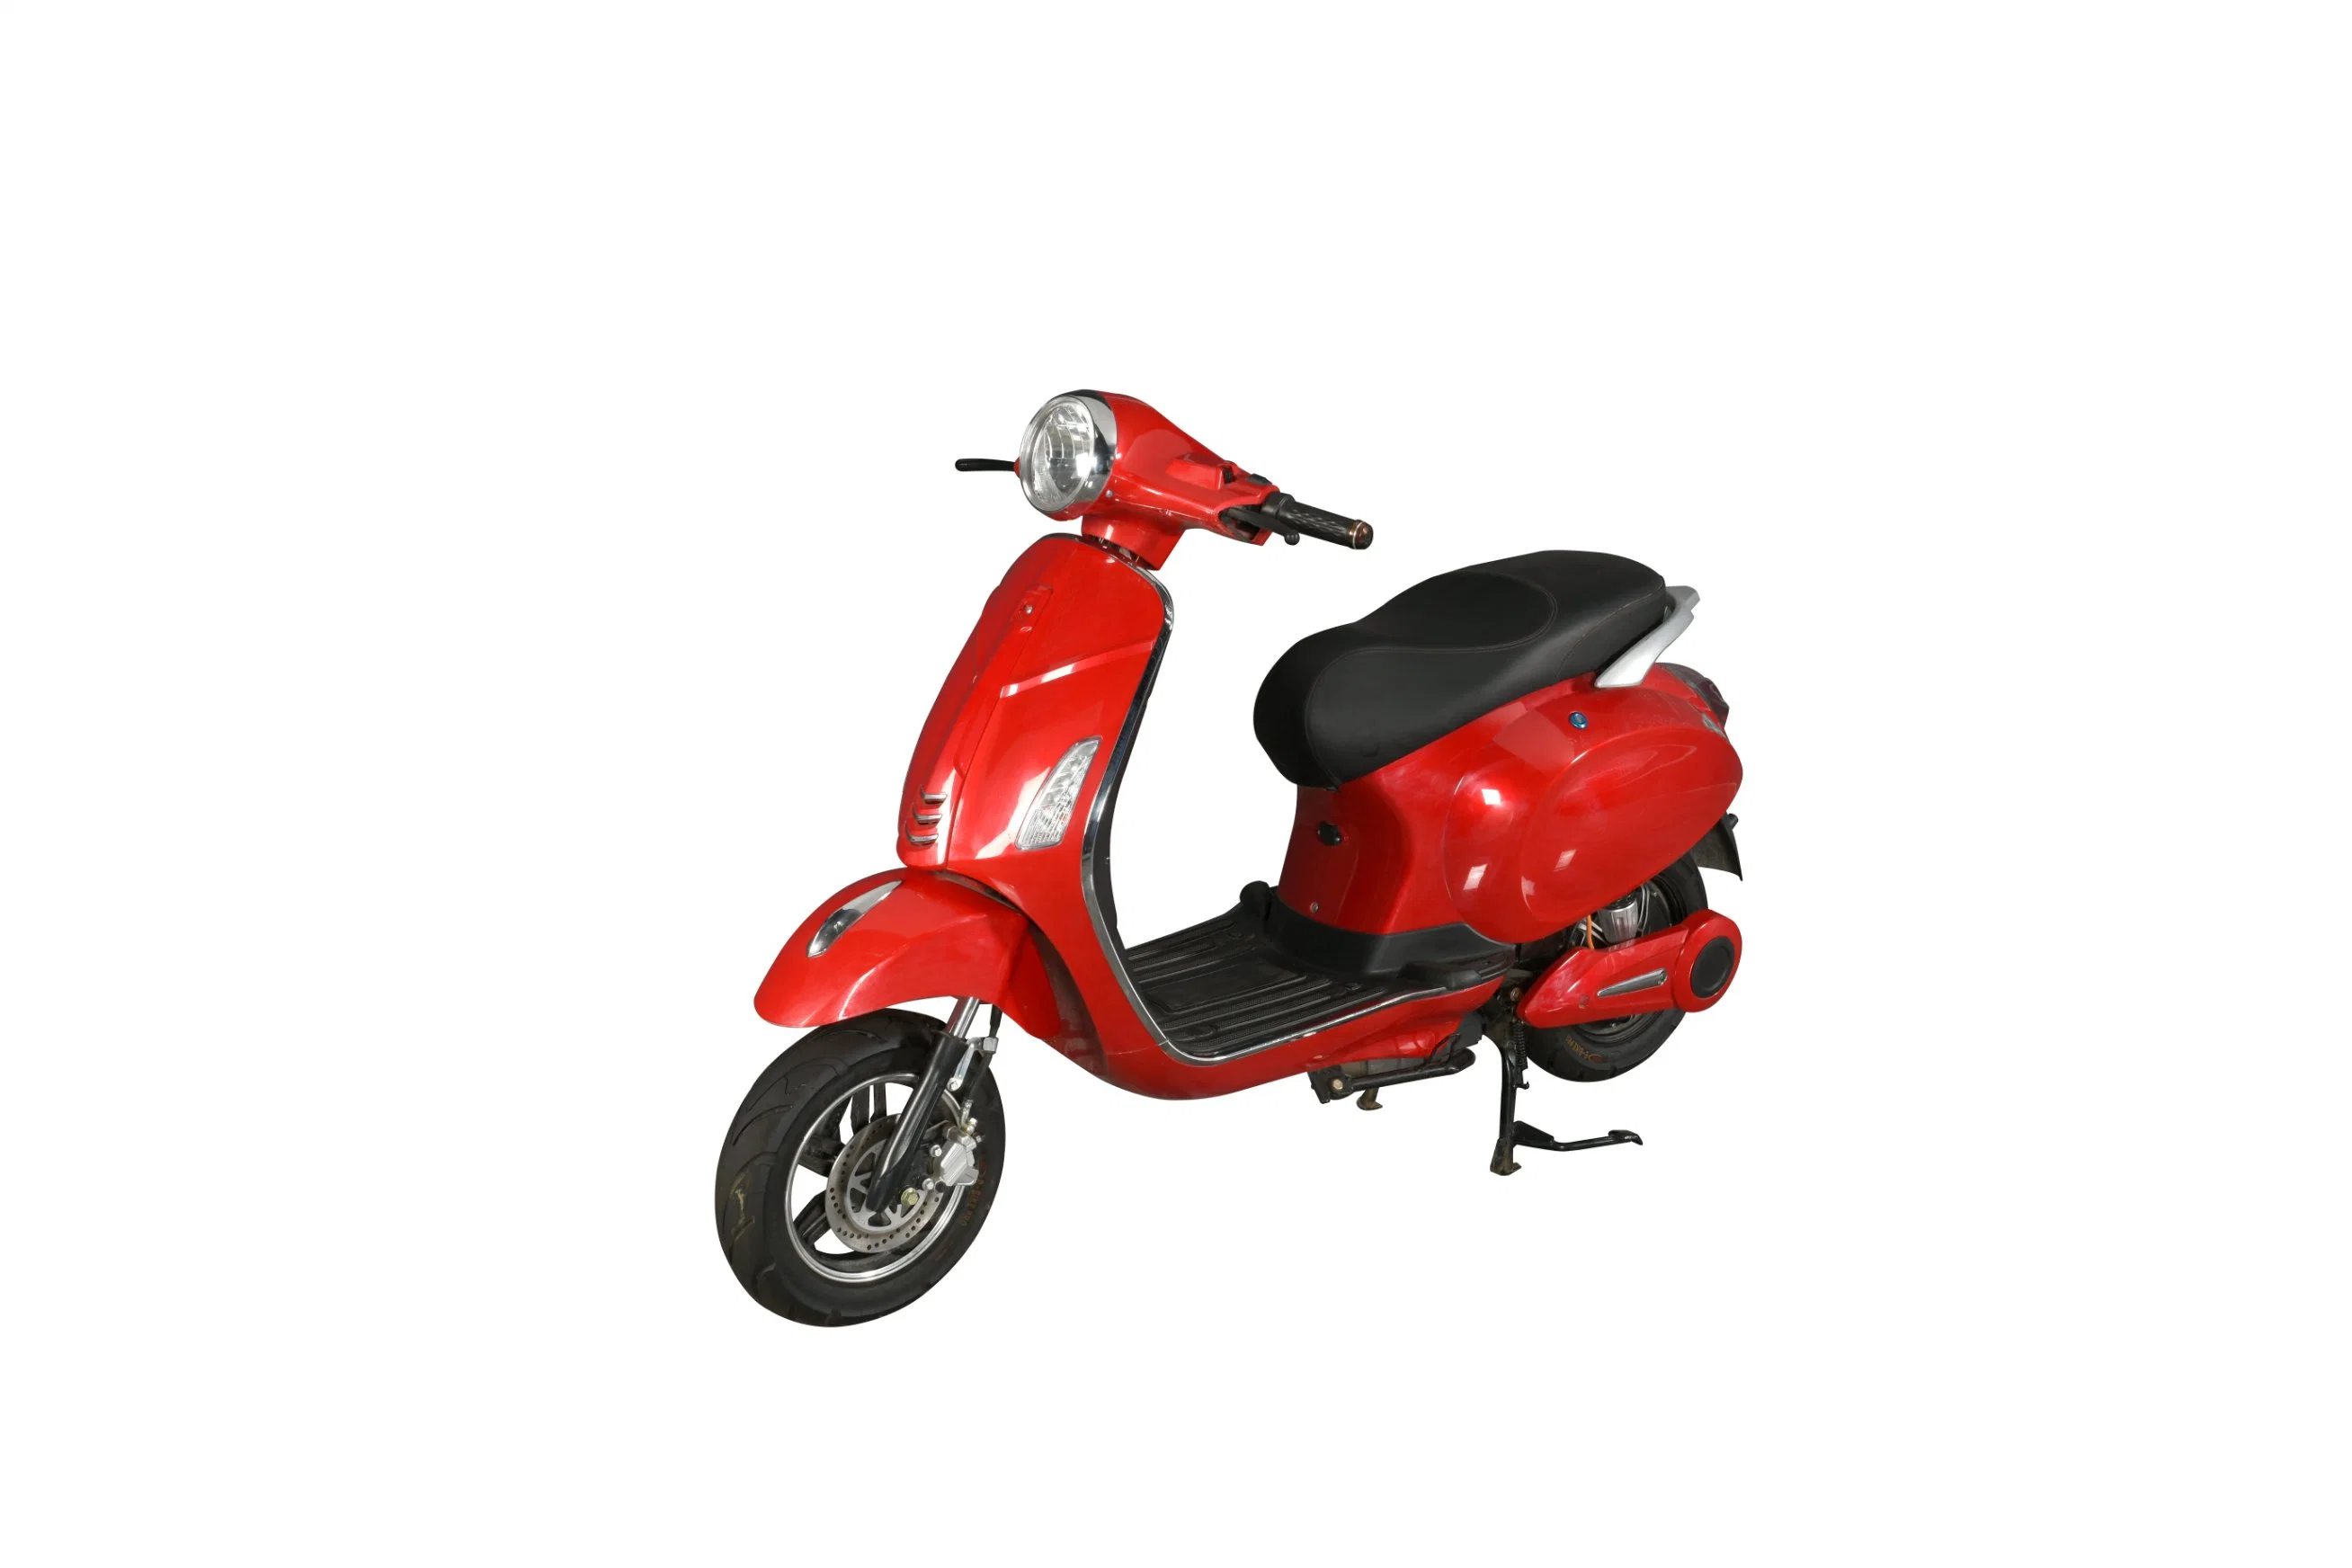 2022 Nuevo estilo adulto 2 ruedas moto Scooter eléctrico de batería eléctrica bicicleta Moto